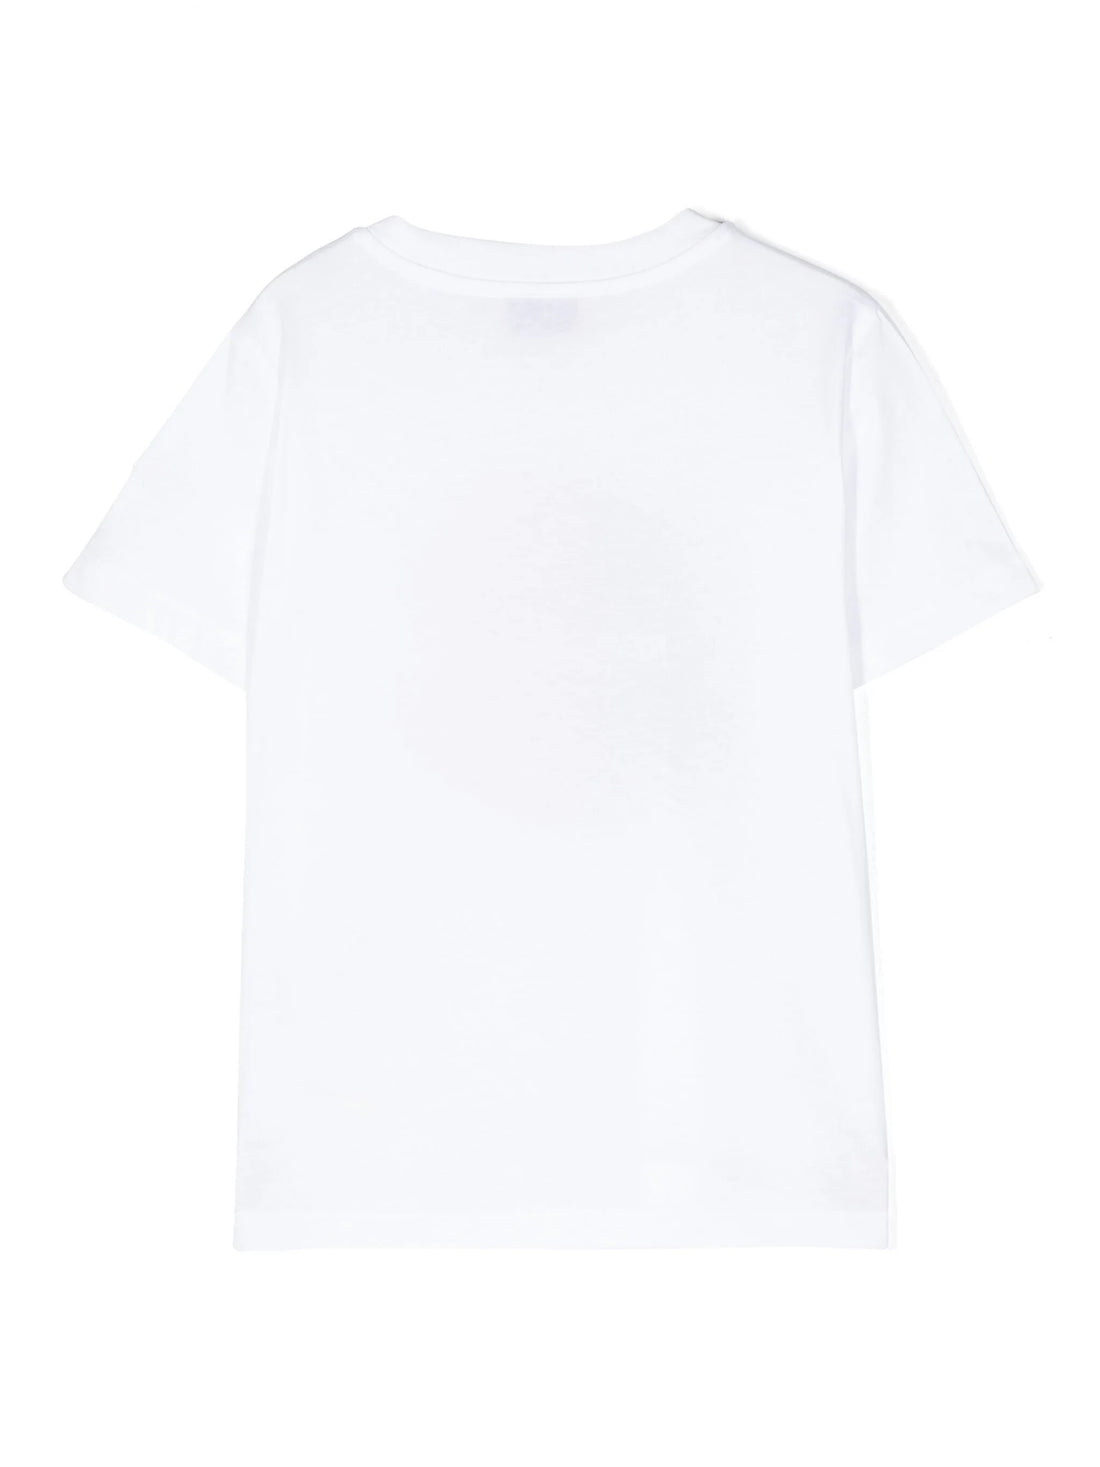 MONCLER KIDS Boys Logo Motif Printed Cotton T-Shirt White